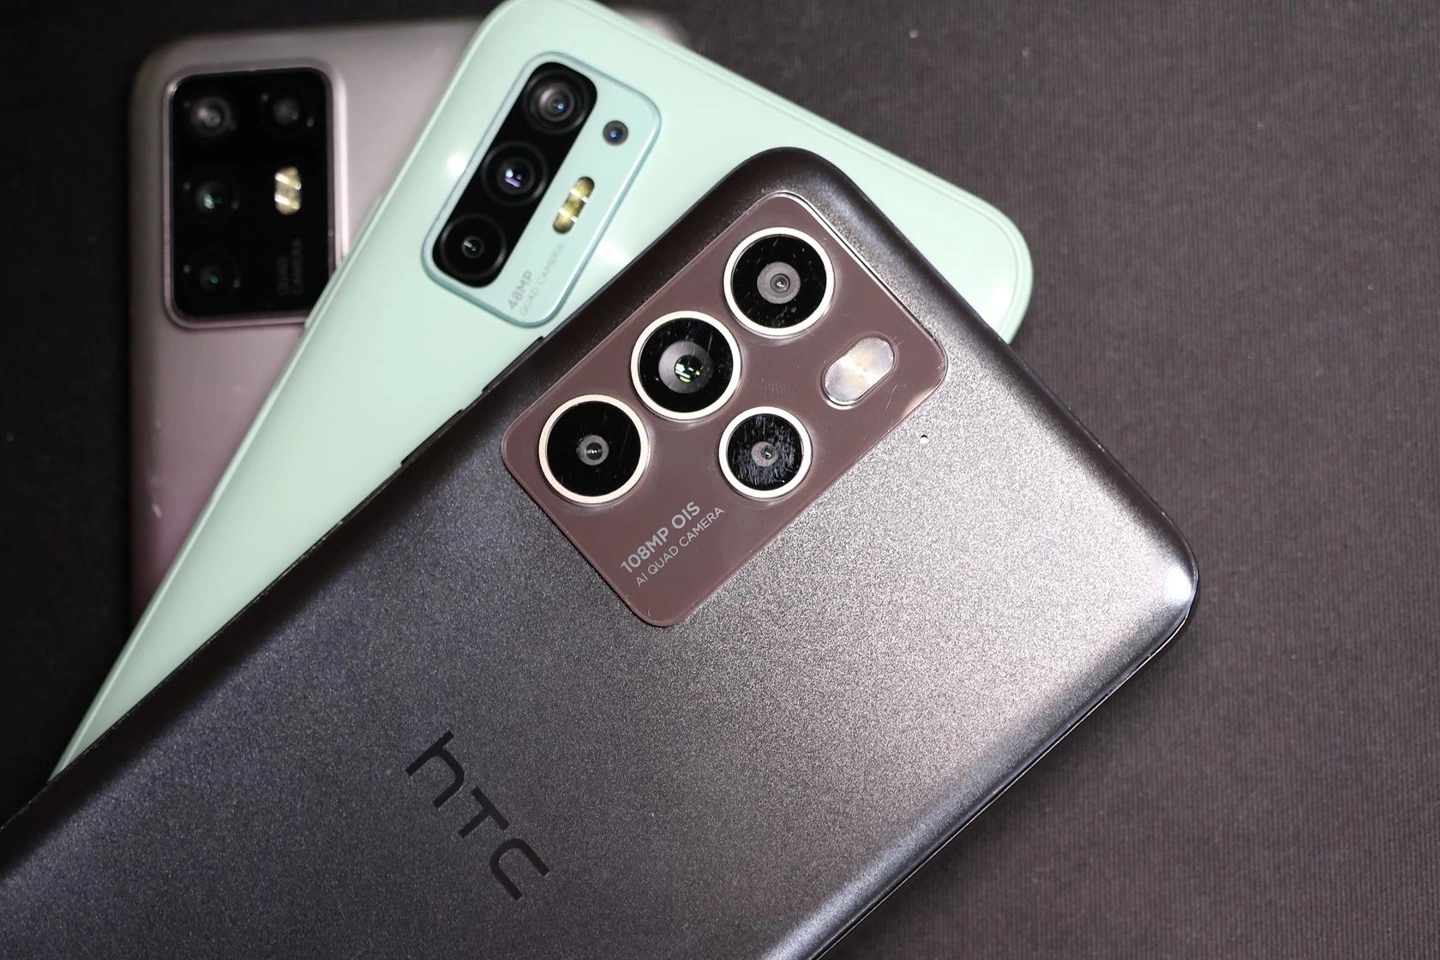 HTC U23 Pro 5G en imágenes: smartphone con cámara de 108 MP y procesador Snapdragon 7 Gen 1